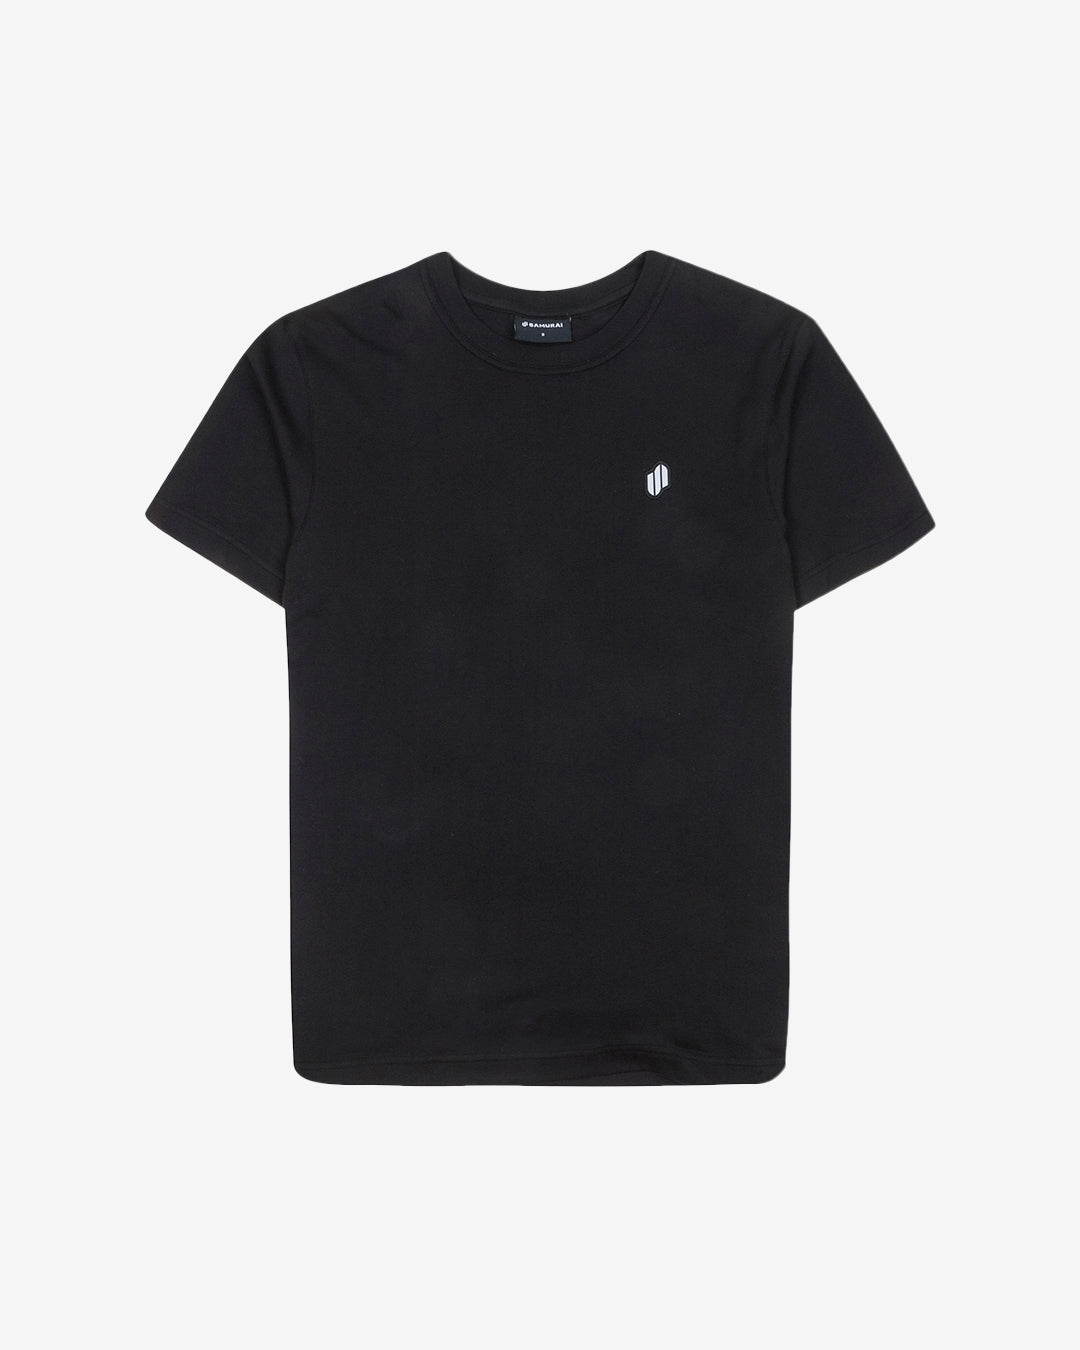 PFC: 002-1 - Womens T-Shirt - Onyx Black